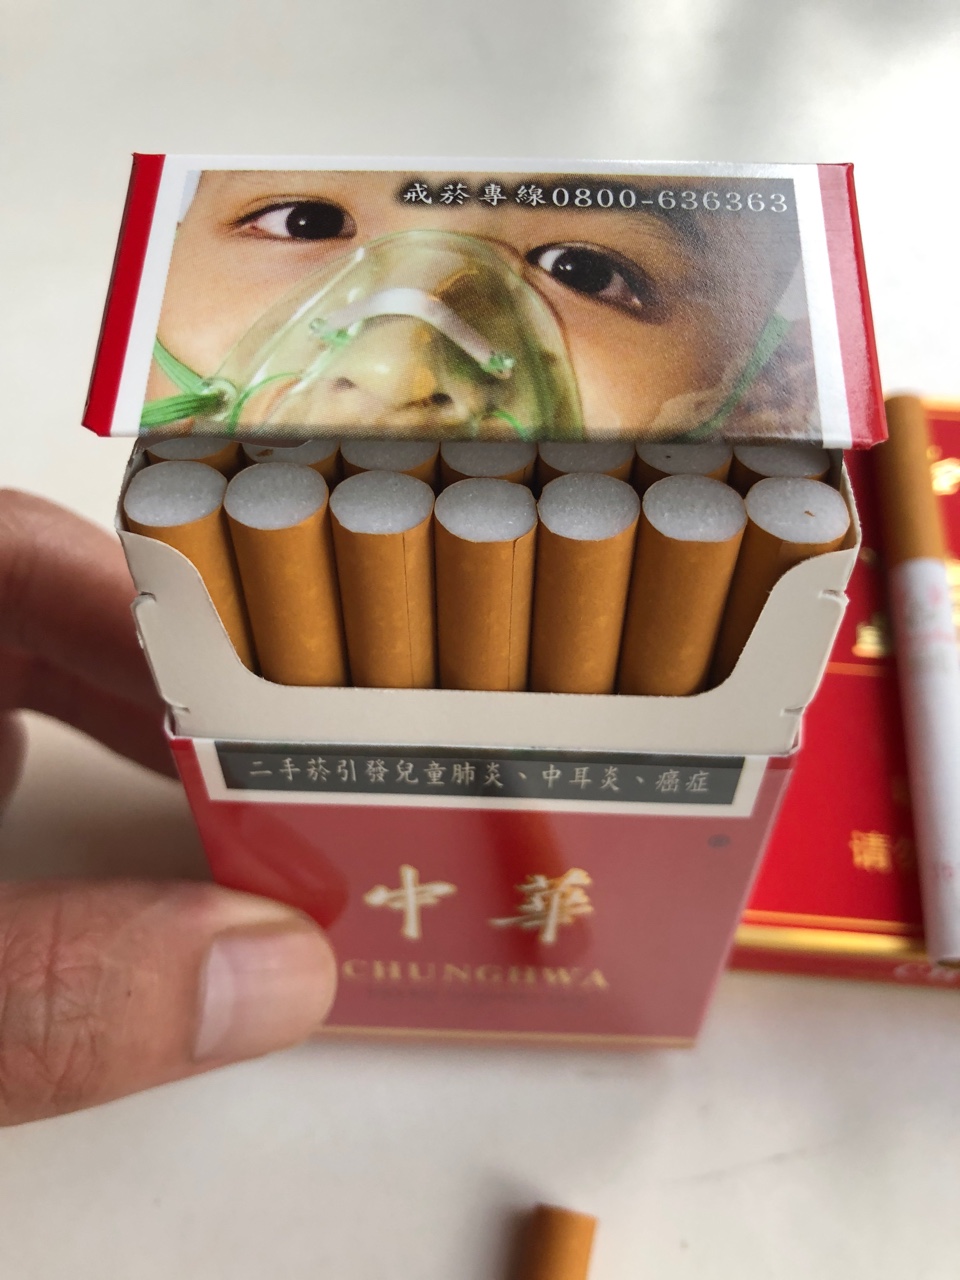 烟民进来看看 中华烟 台湾出口版感受